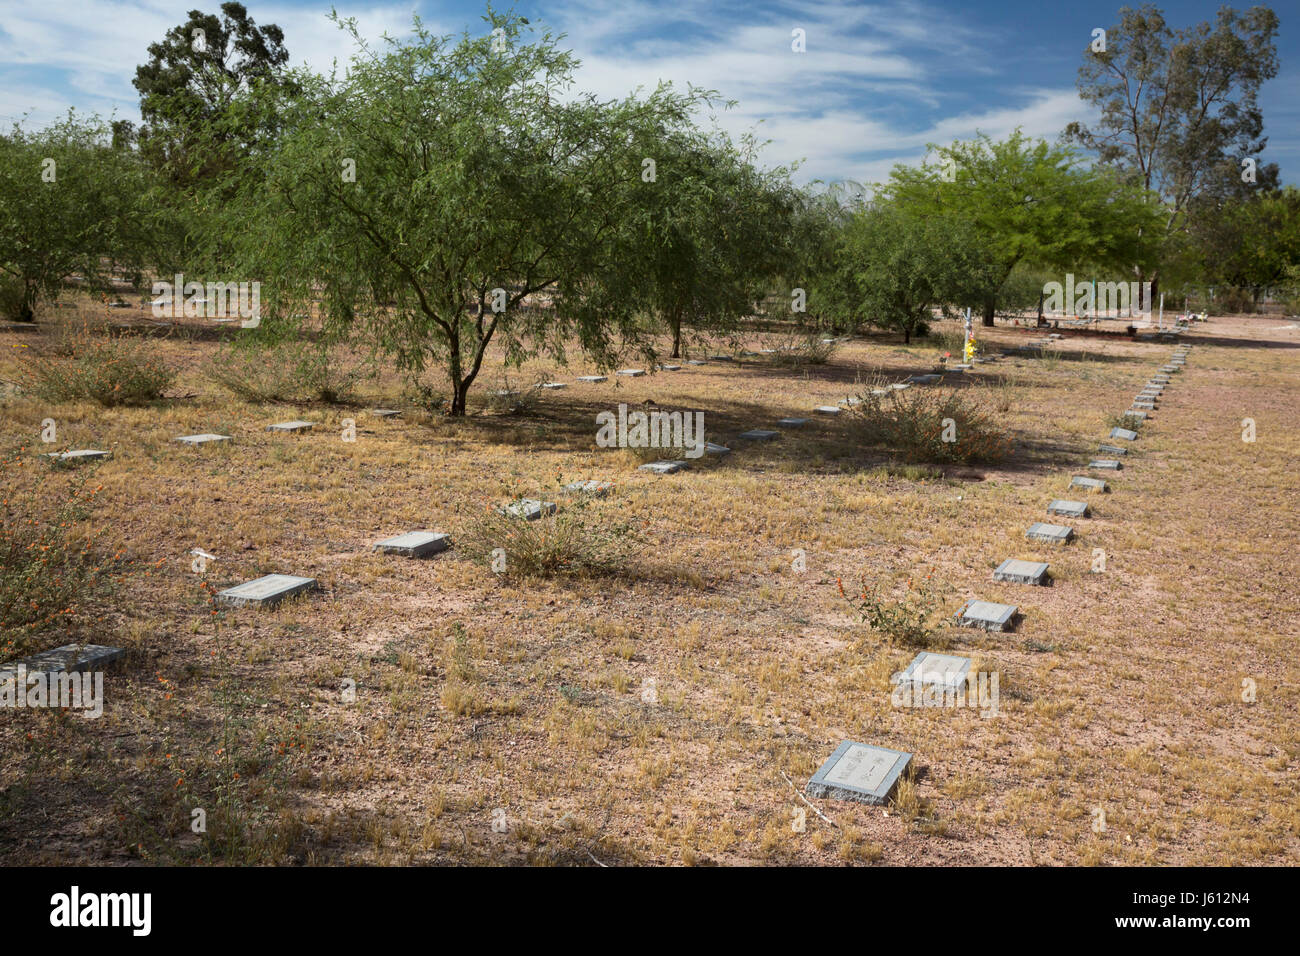 Tucson, Arizona - Le comté de Pima Cemetery, où les indigents, les sans-abri, et non identifiées ont été enterrés, y compris les migrants qui sont morts crossing Banque D'Images